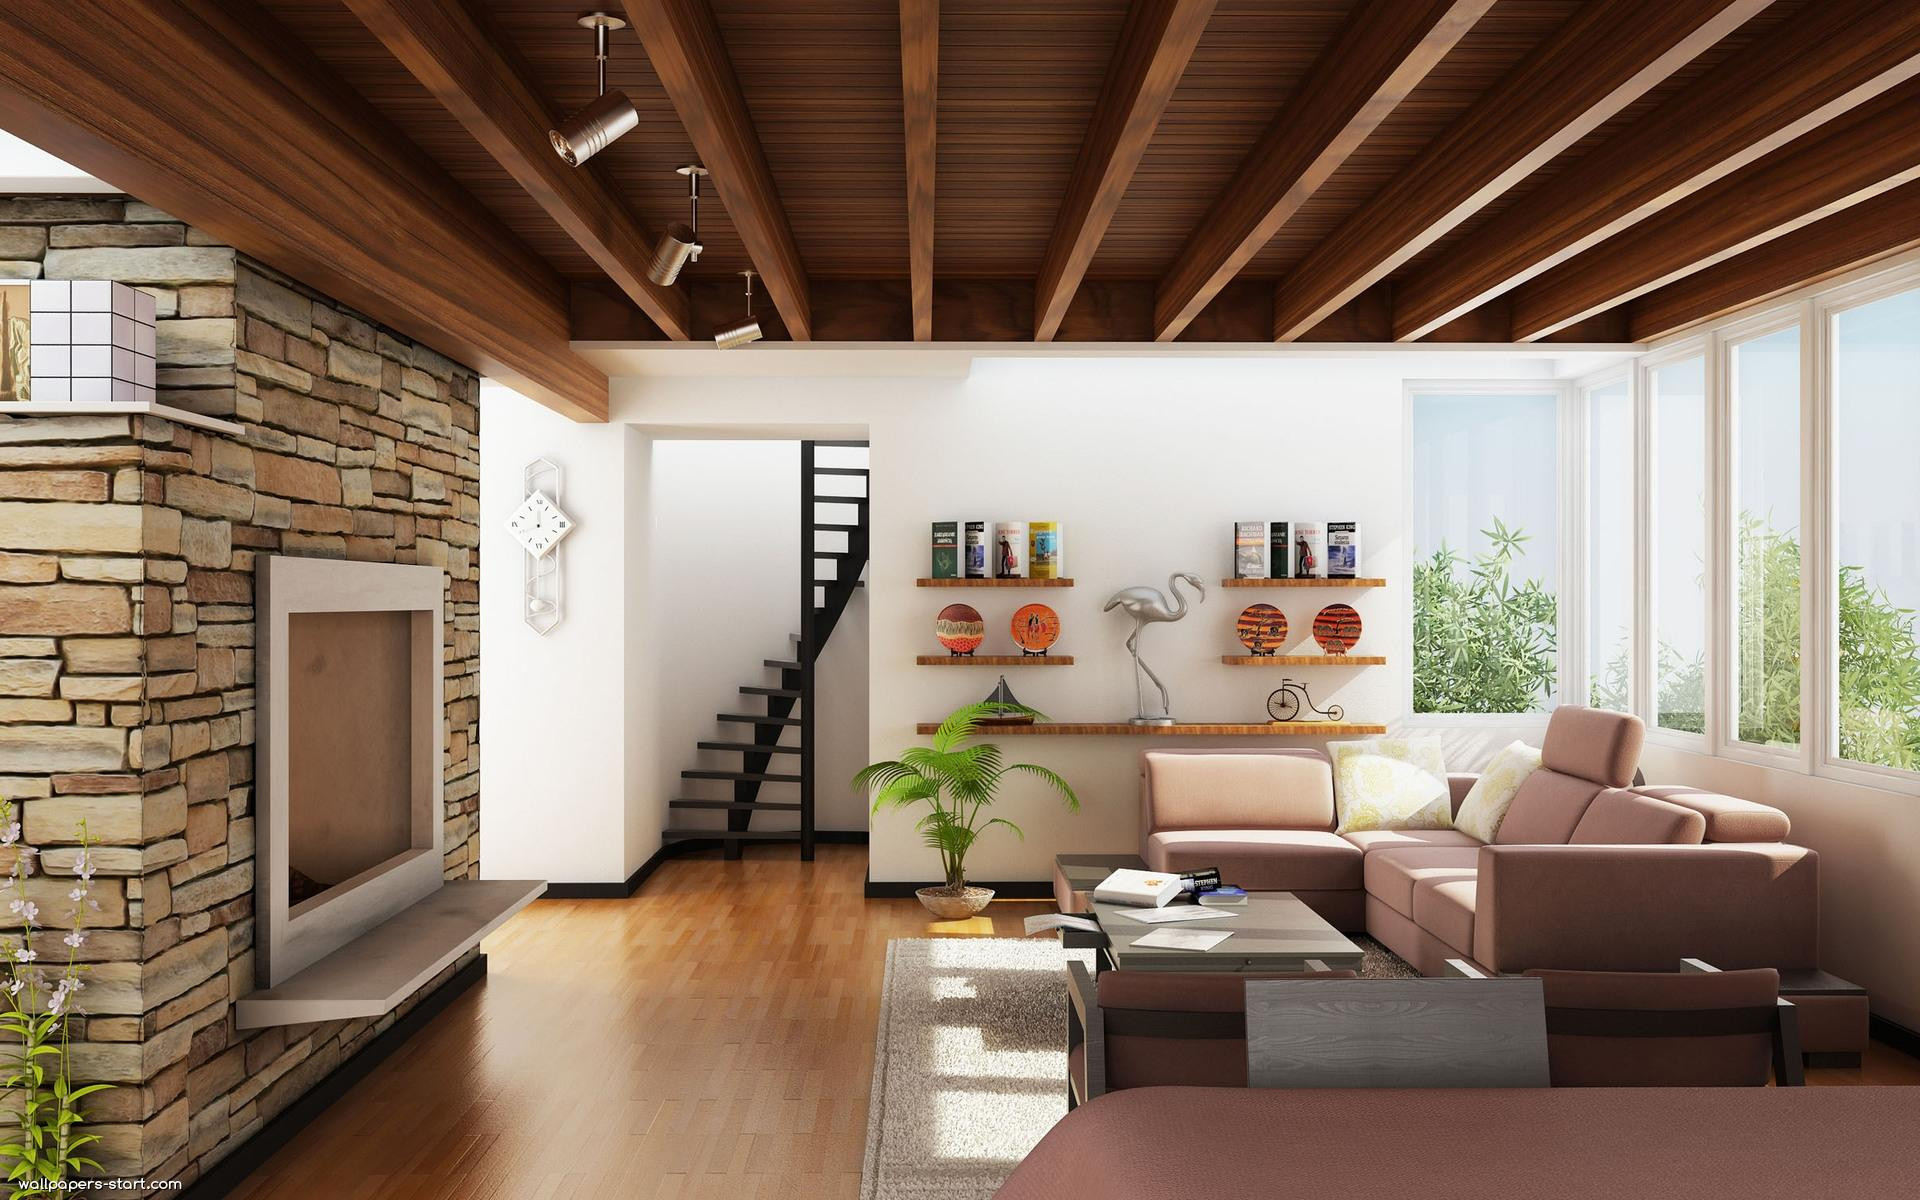 Modern Living Room Wallpaper
 Wallpapers for Living Room Design Ideas in UK